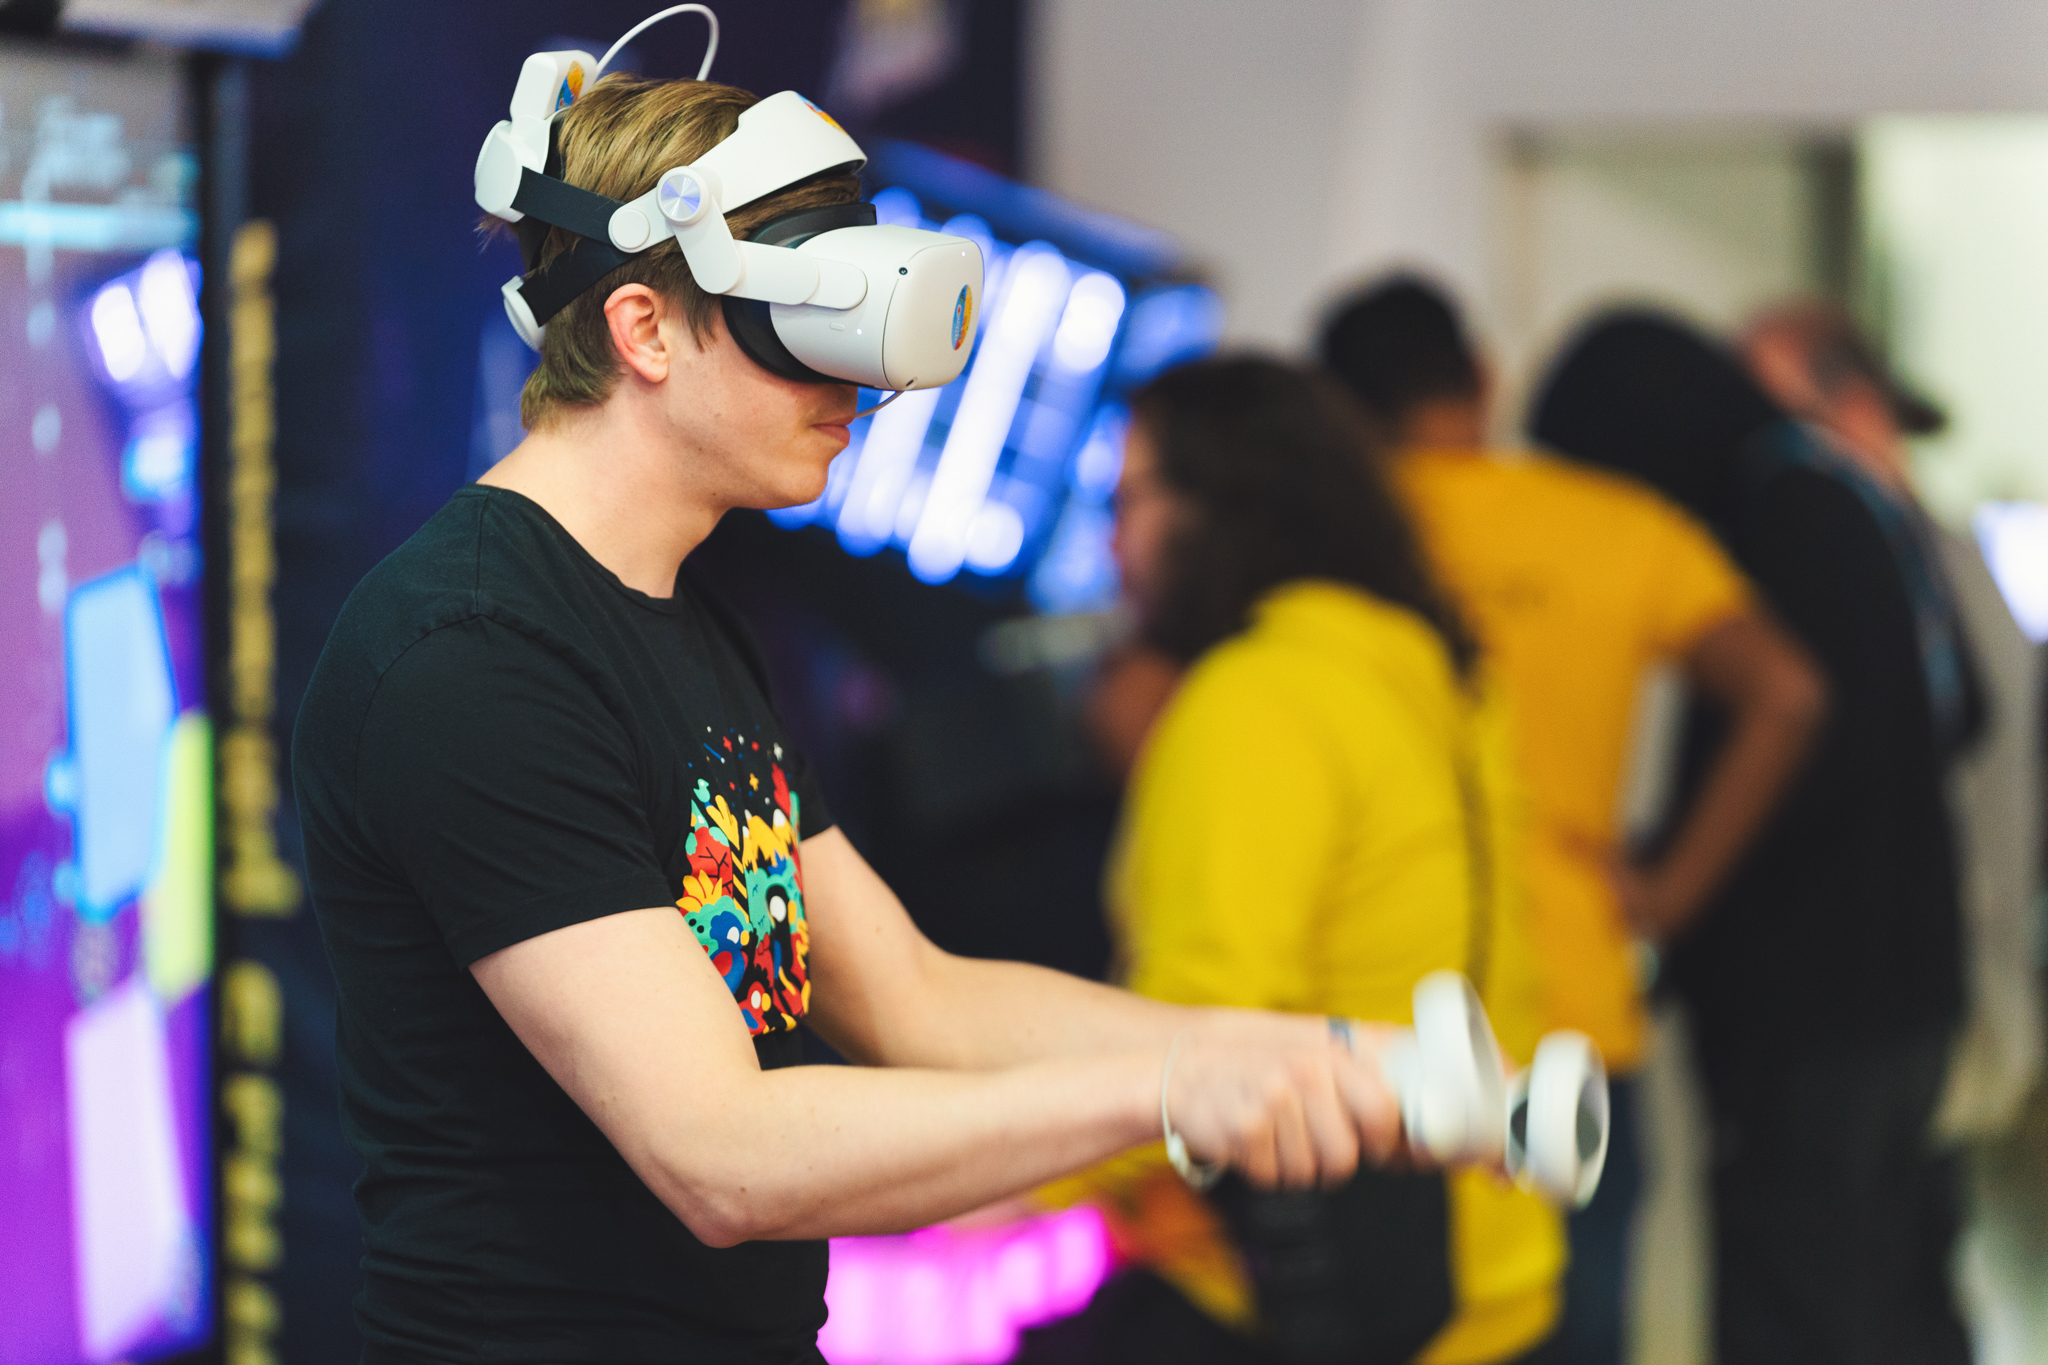 Ein Mann beim Beat Saber spielen mit VR Headset und Motion Controllern.